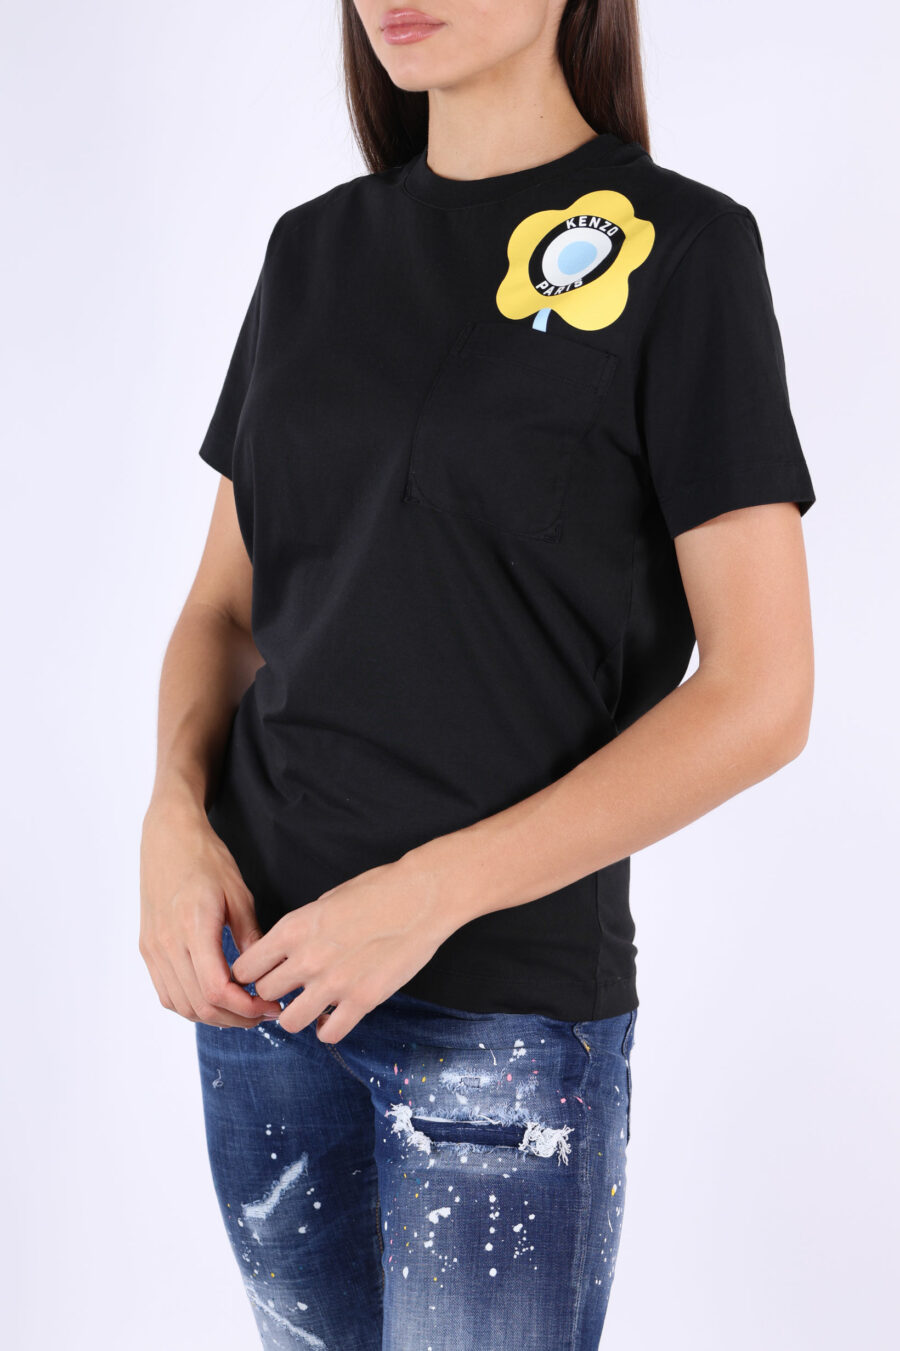 Camiseta negra con logo amarillo "kenzo target" - 361223054662202017